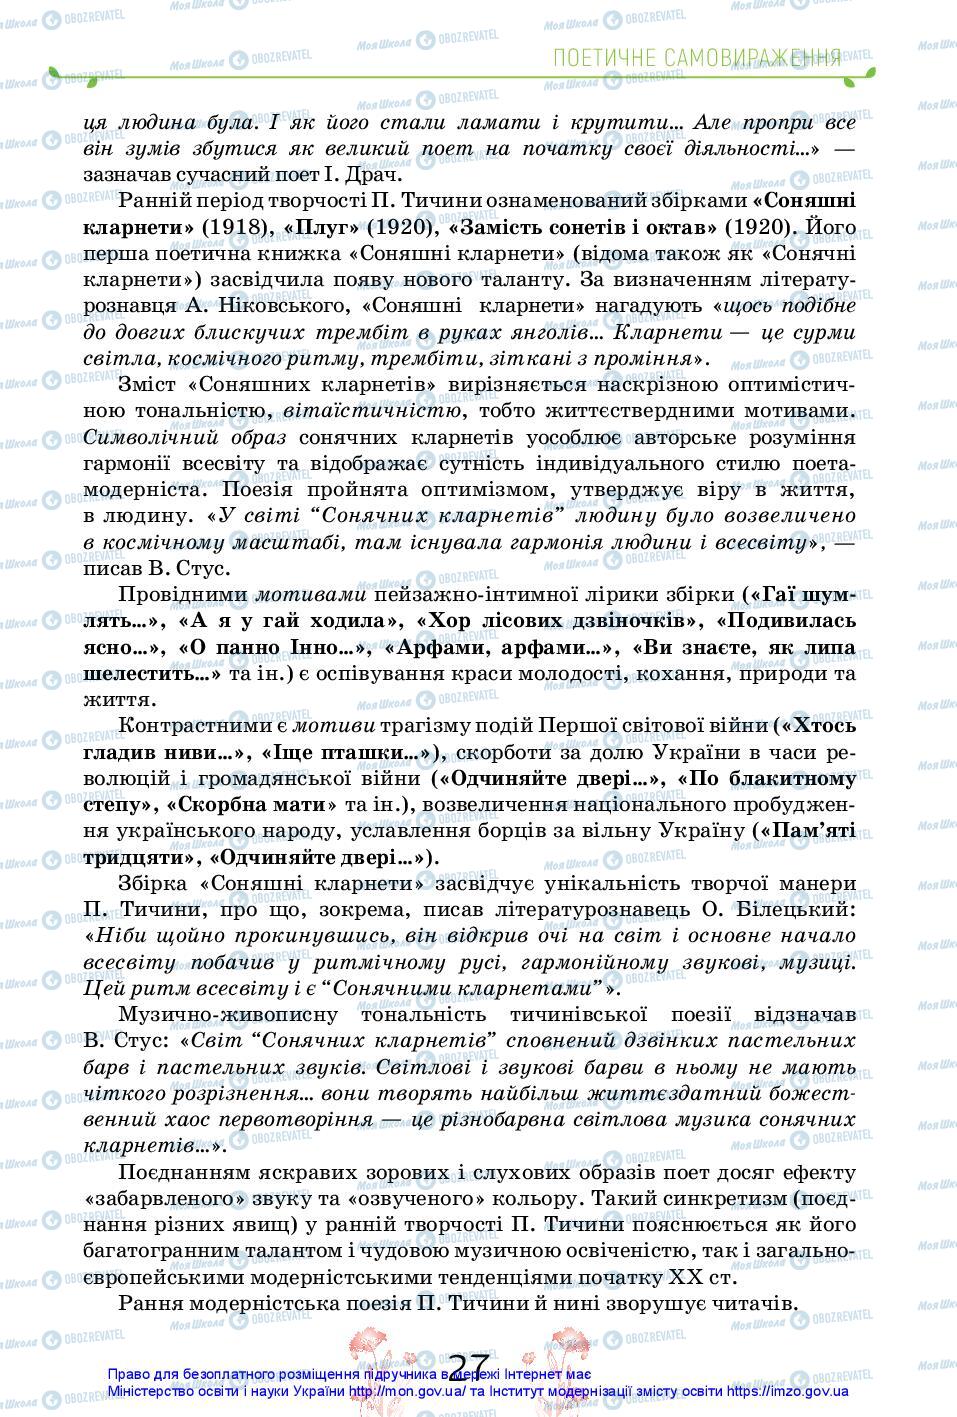 Підручники Українська література 11 клас сторінка 27